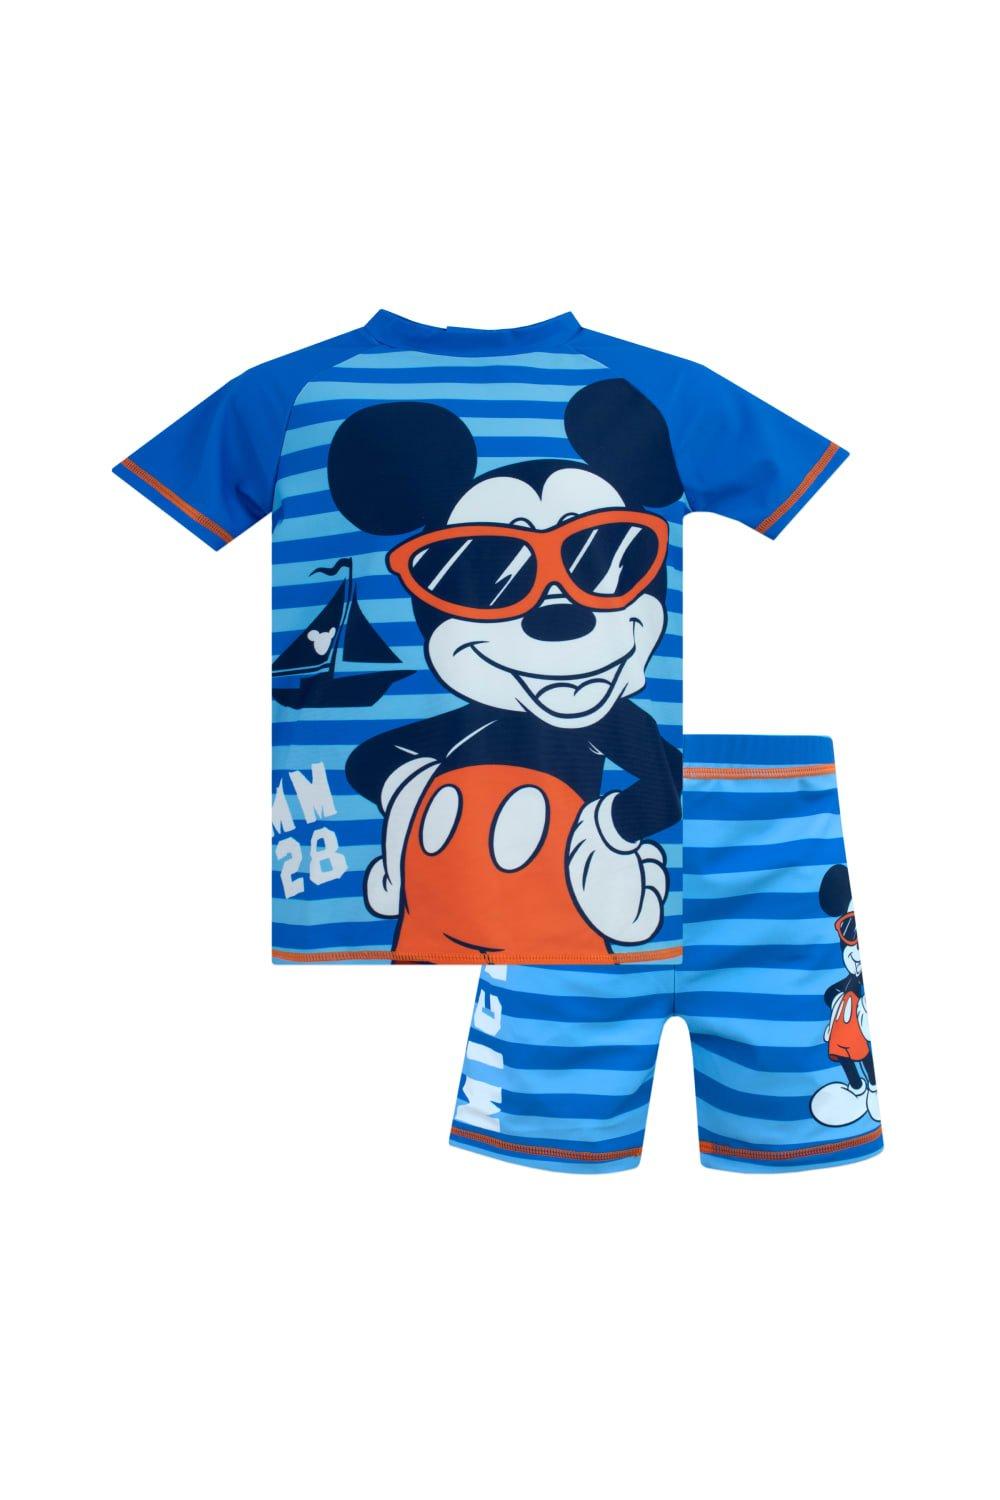 Комплект для плавания из двух предметов в полоску с Микки Маусом Disney, синий оригинальная футболка с микки маусом для мальчиков disney красный